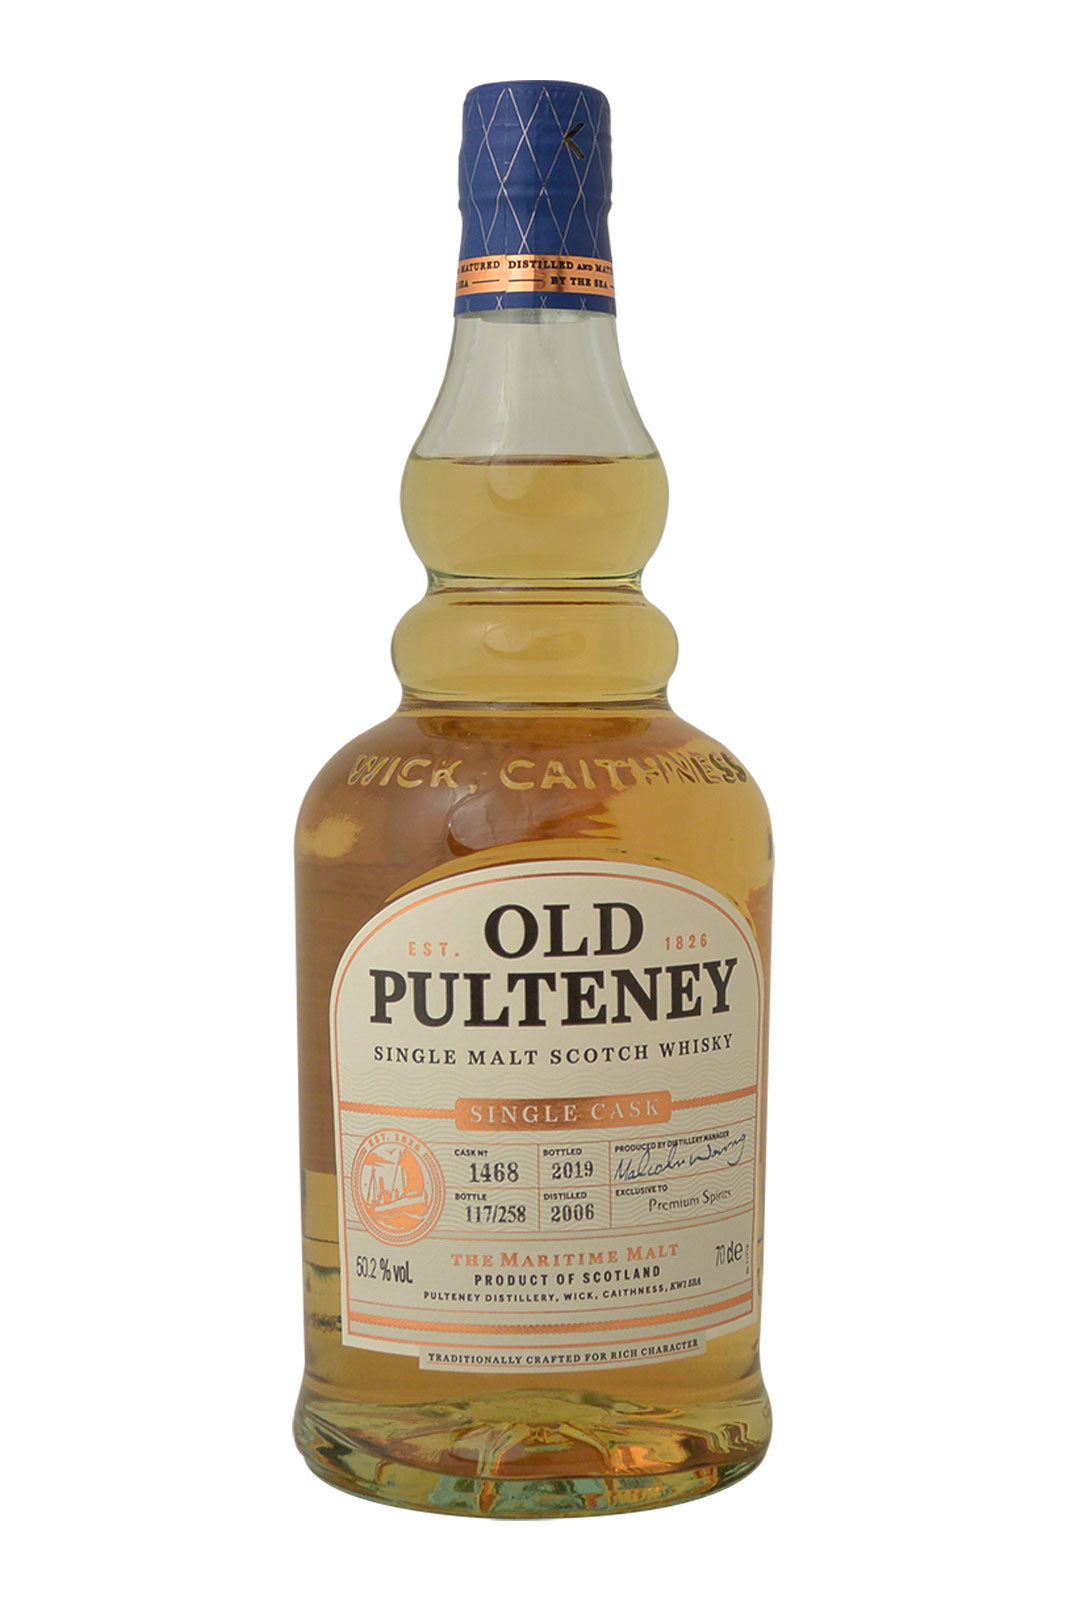 Old Pulteney 2006 Single Cask 1468